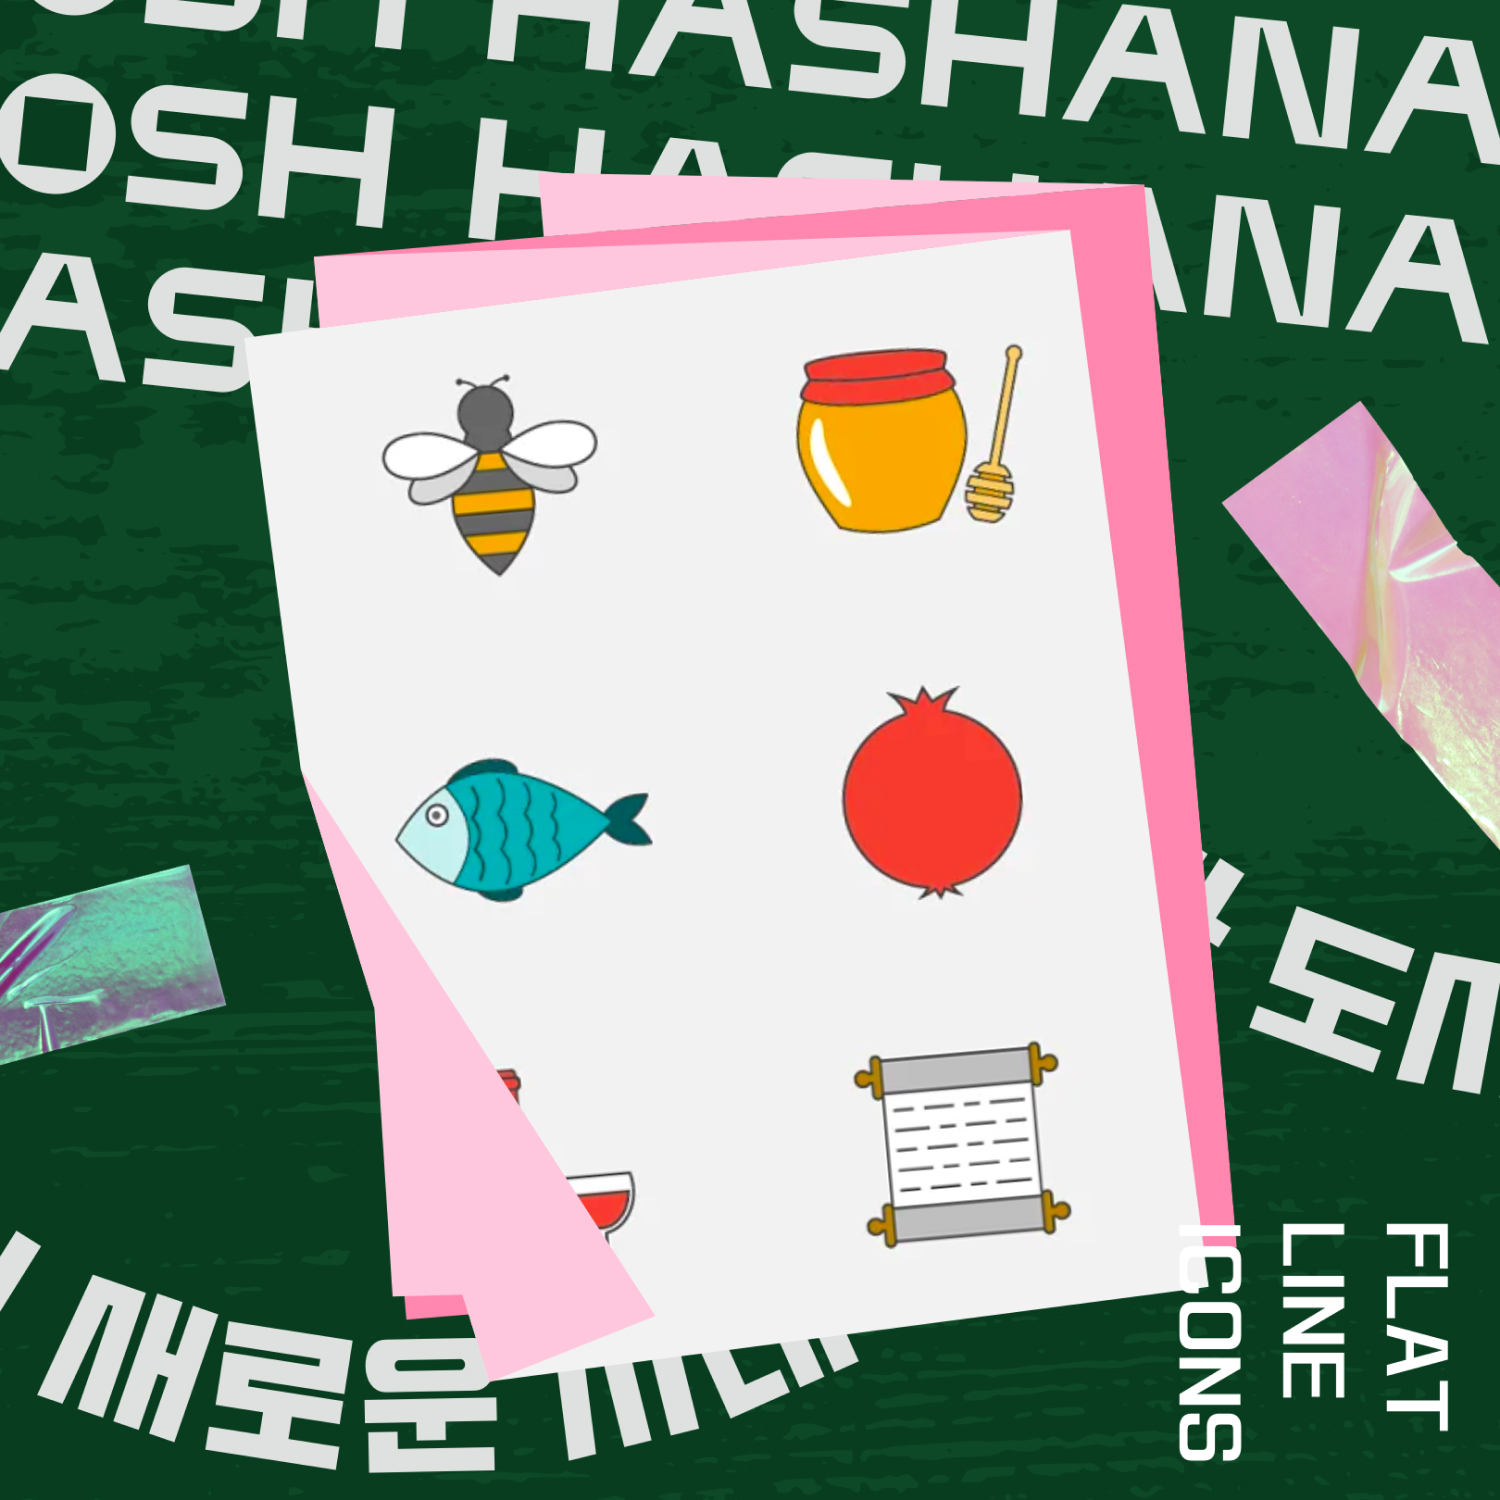 Rosh Hashanah flat line icons.